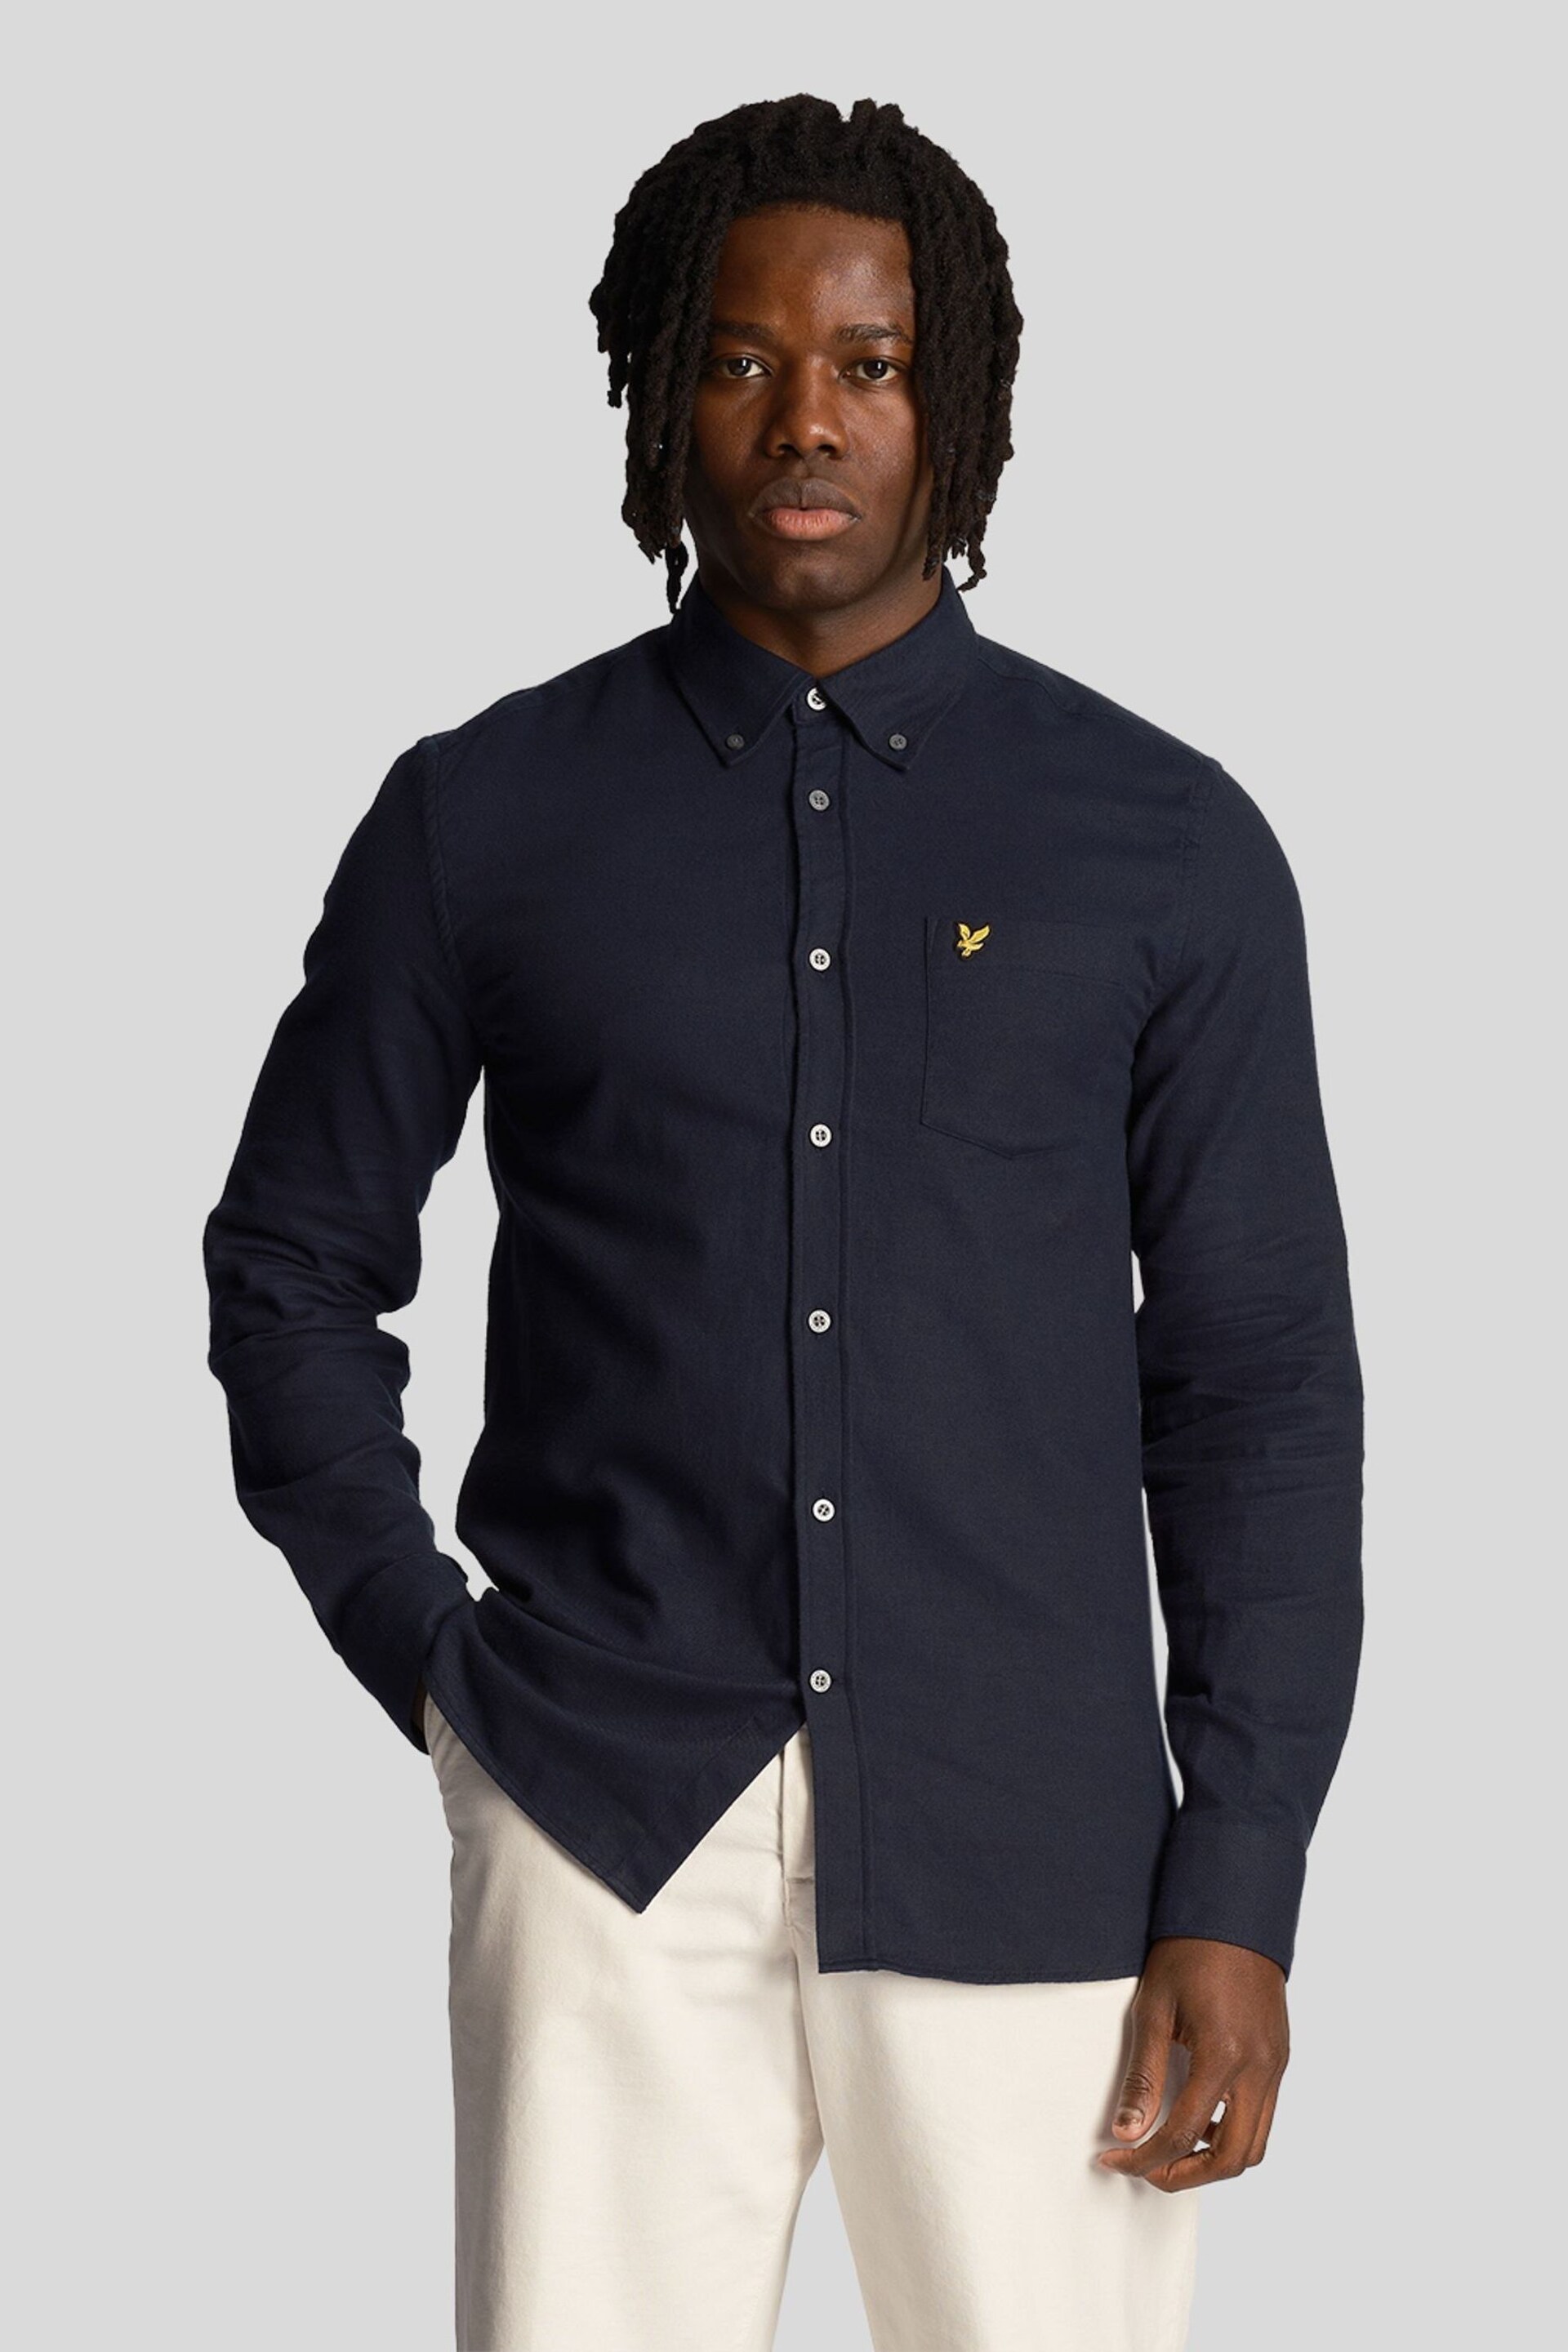 Lyle & Scott Blue Plain Flannel Shirt - Image 1 of 9